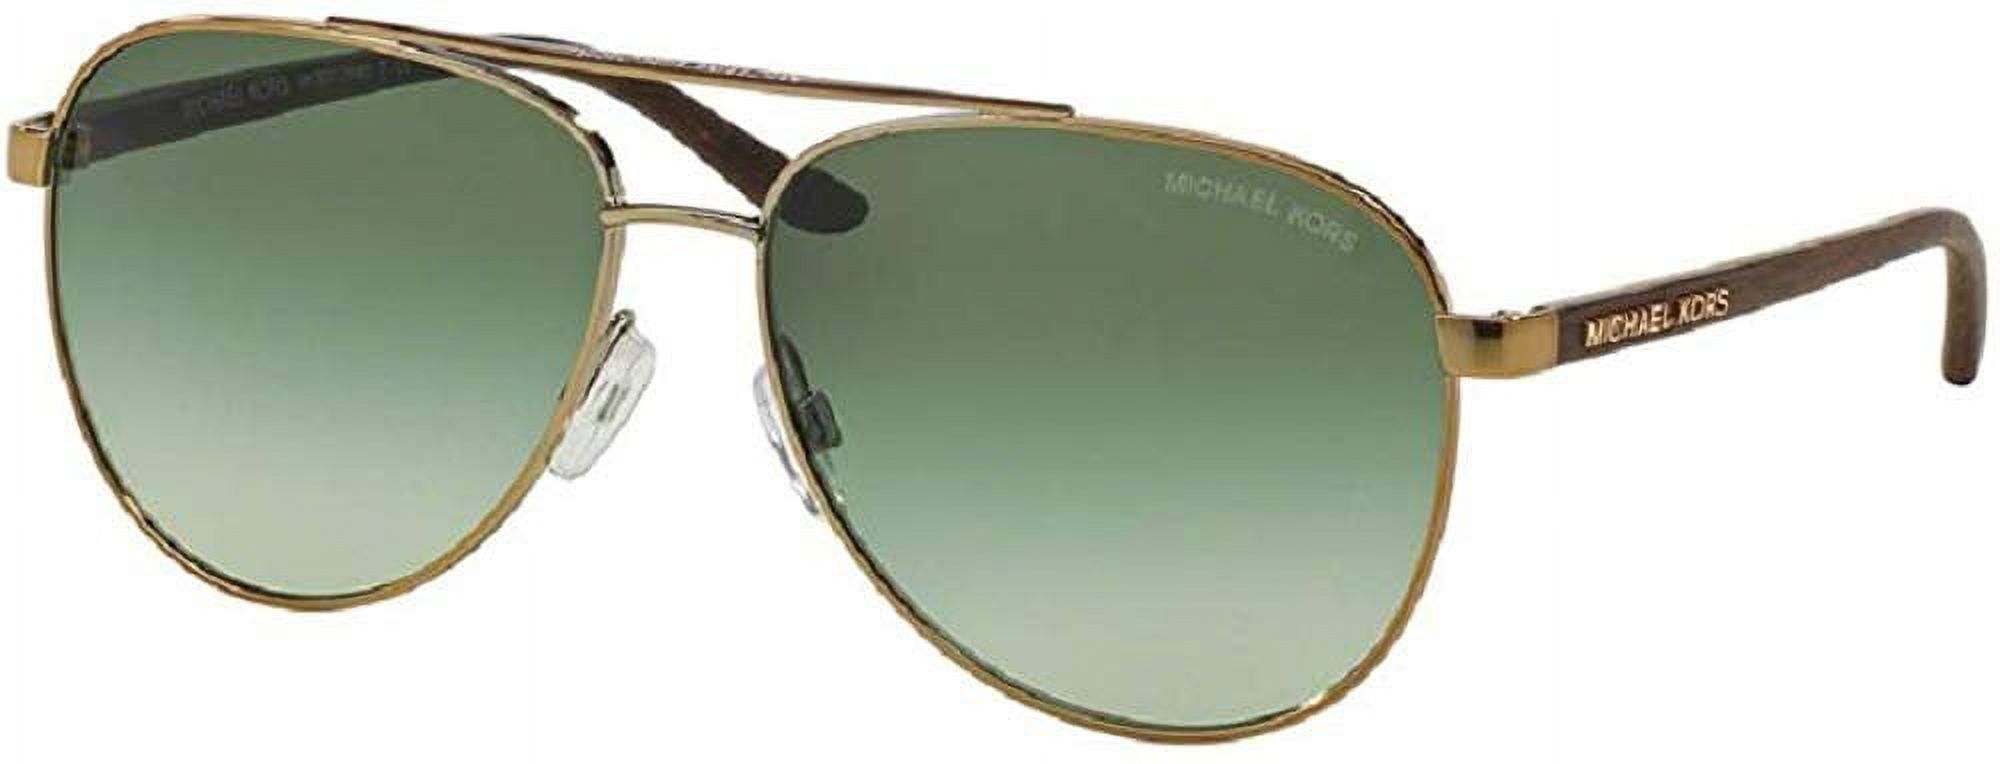 Michael Kors MK5007 HVAR Aviator 104525 59M Rose Gold White/Blue Mirror Sunglasses For Women+ FREE Complimentary Eyewear Care Kit - image 1 of 5